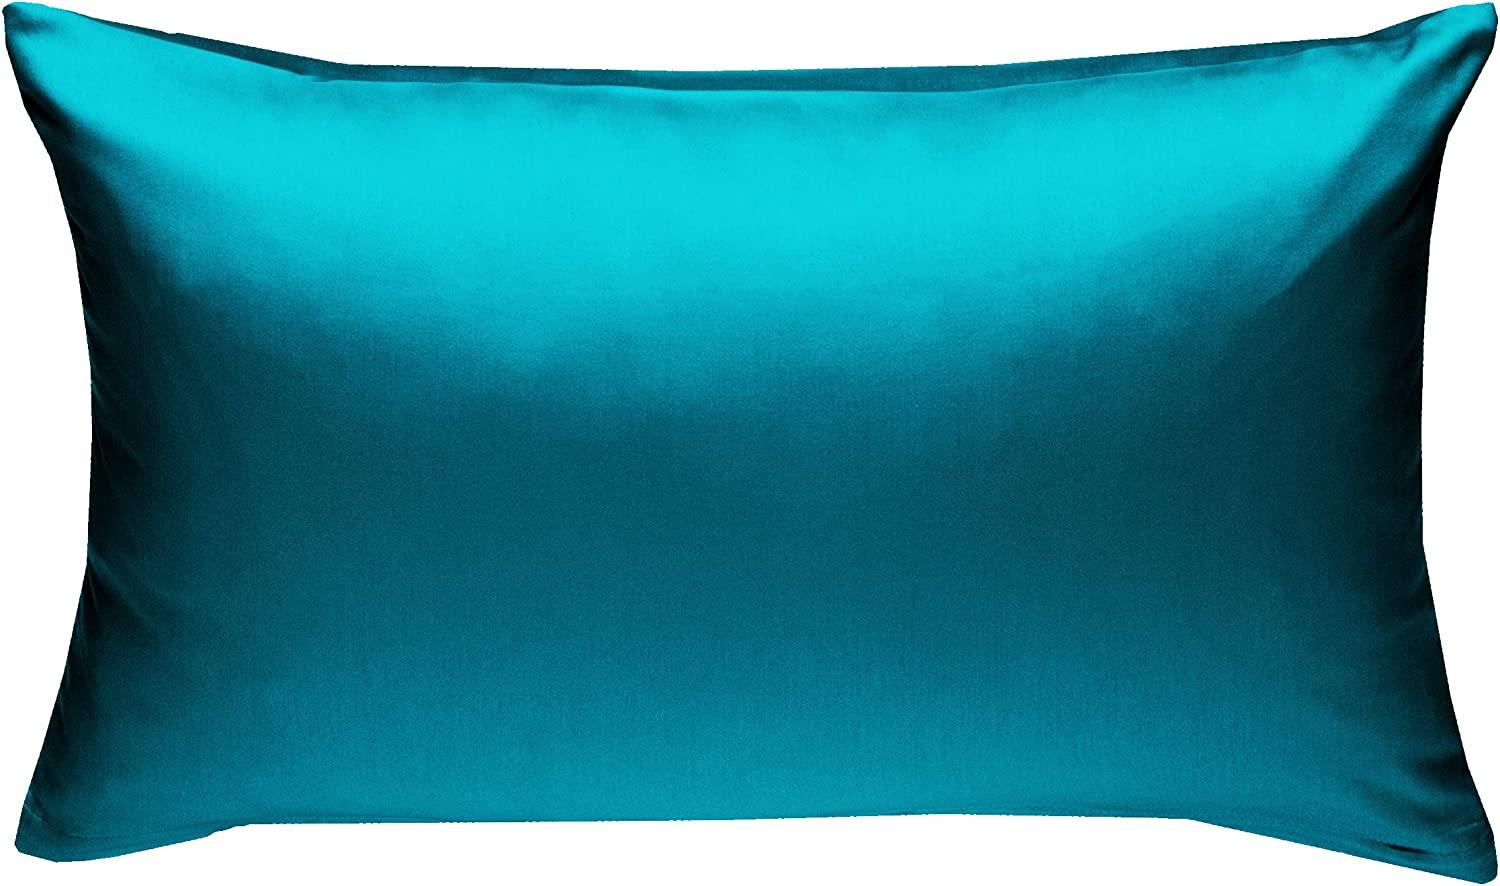 Bettwaesche-mit-Stil Mako-Satin / Baumwollsatin Bettwäsche uni / einfarbig petrol blau Kissenbezug 60x80 cm Bild 1